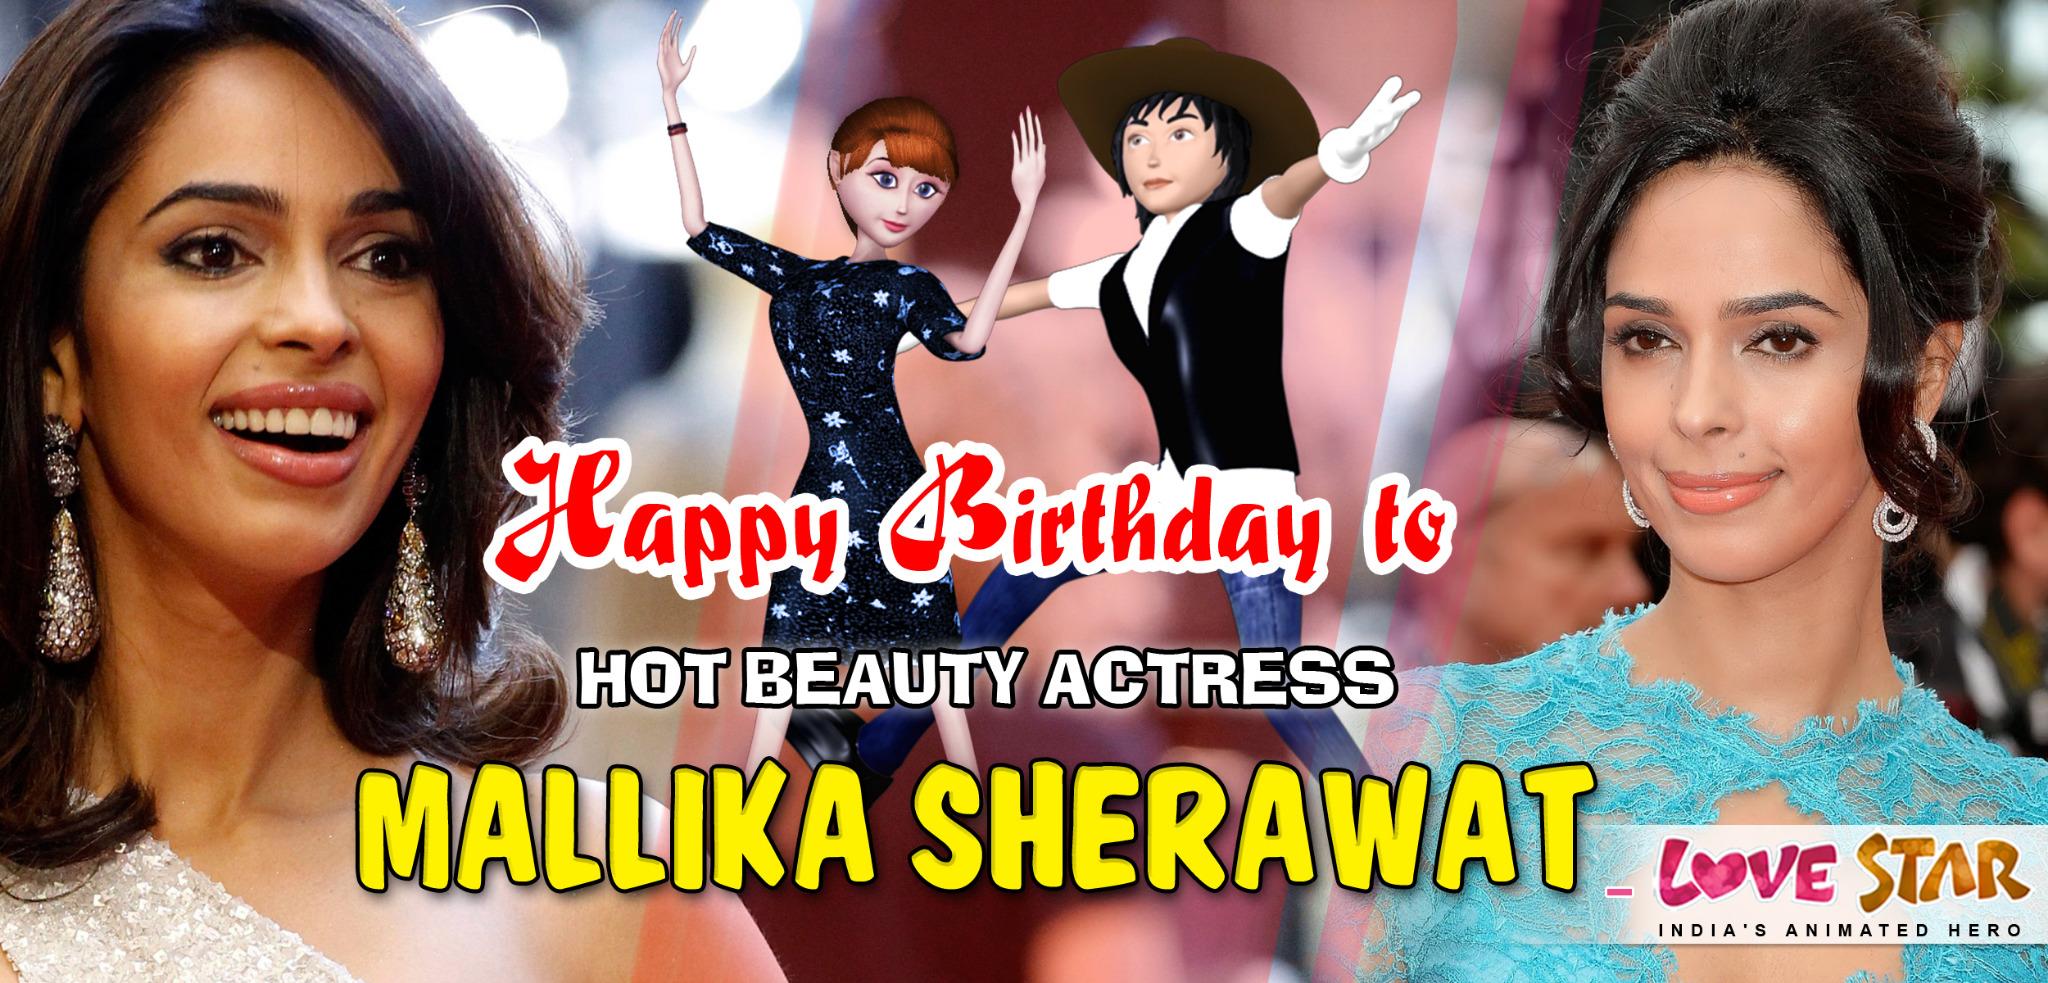 Happy Birthday to Hot Beauty Actress Mallika Sherawat - Love Star 